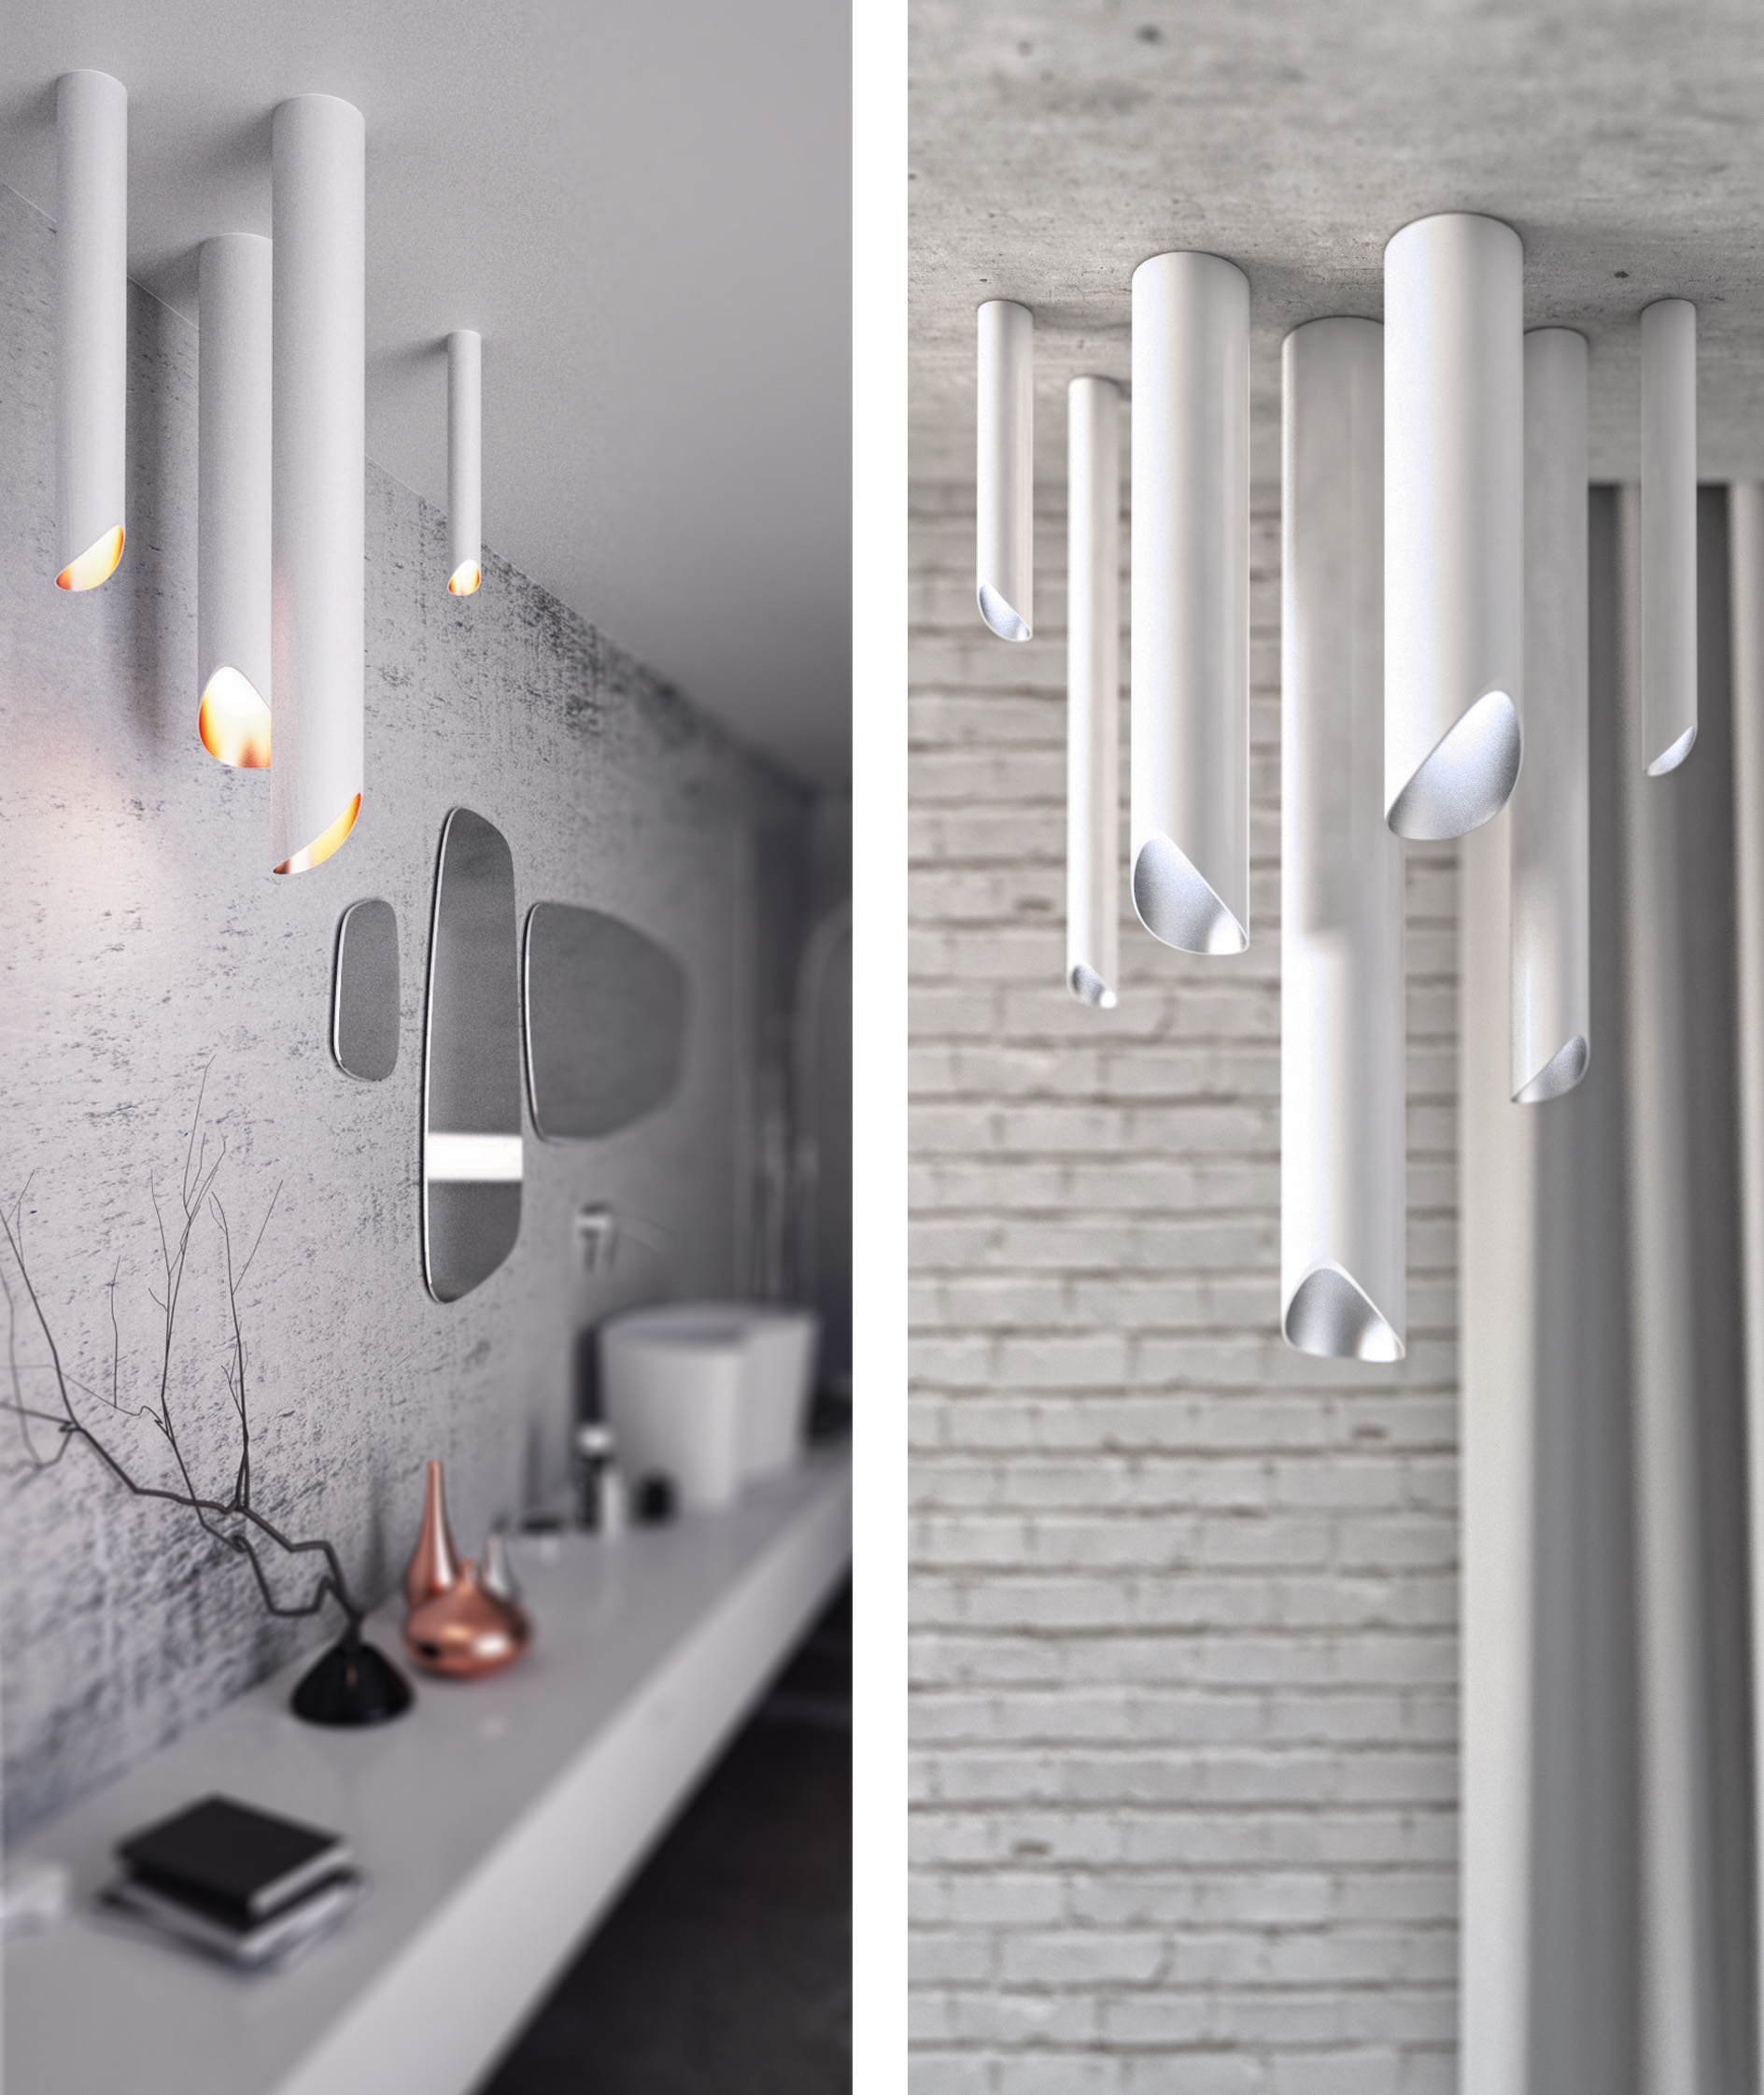 tube 047 Tube je kolekcí ambientních svítidel s minimalistickým designem. Jednoduchá, čistá forma bez viditelných spojů spolu s precizním provedením z nich dělá ideální architektonický prvek.